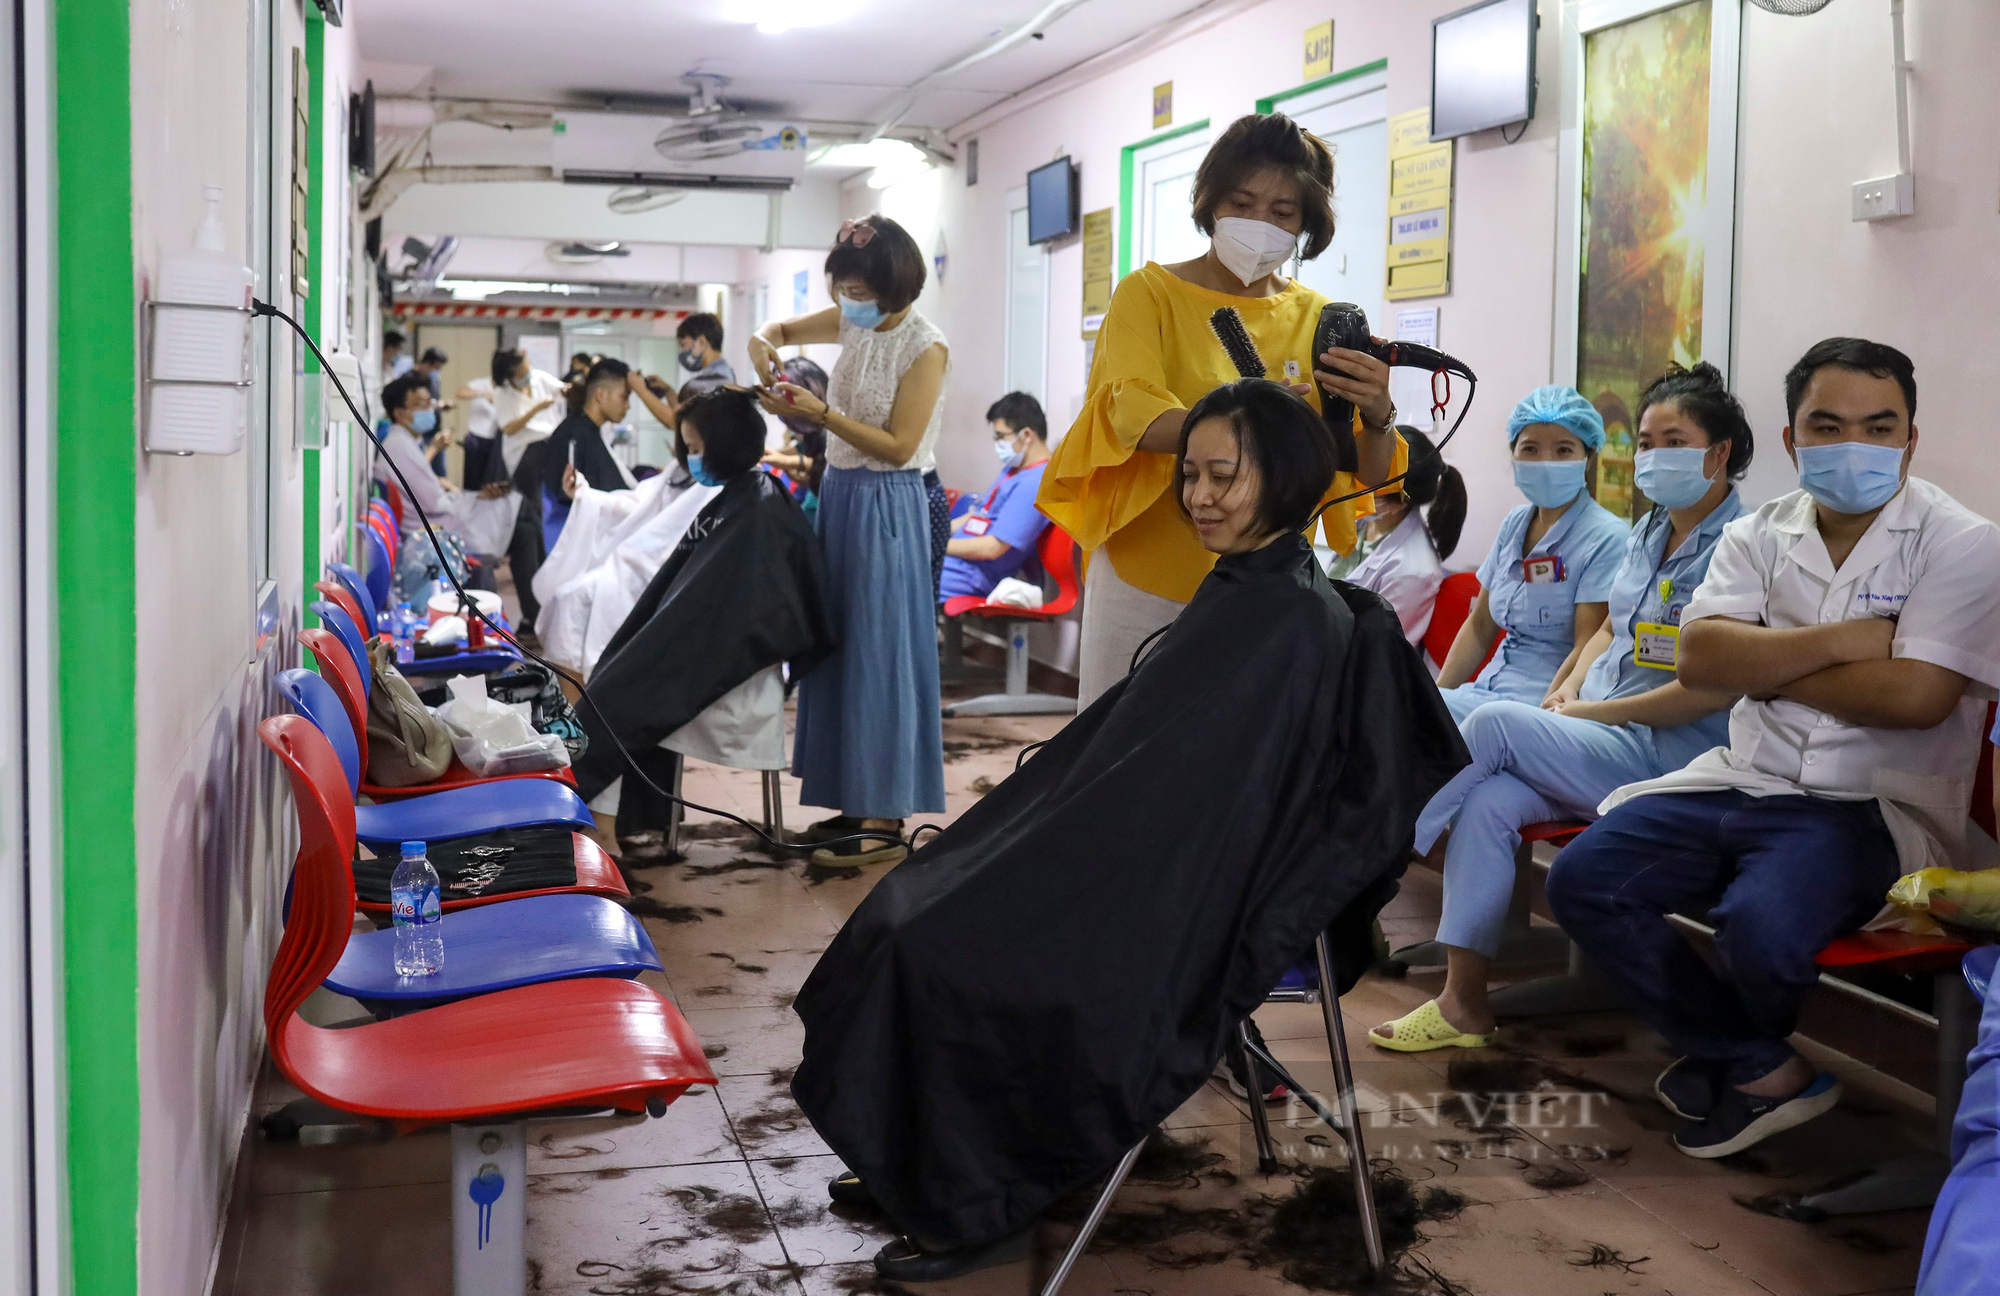 &quot;Salon tóc đặc biệt&quot; cho những y bác sỹ lên đường chống dịch Covid-19 tại Hà Nội - Ảnh 2.